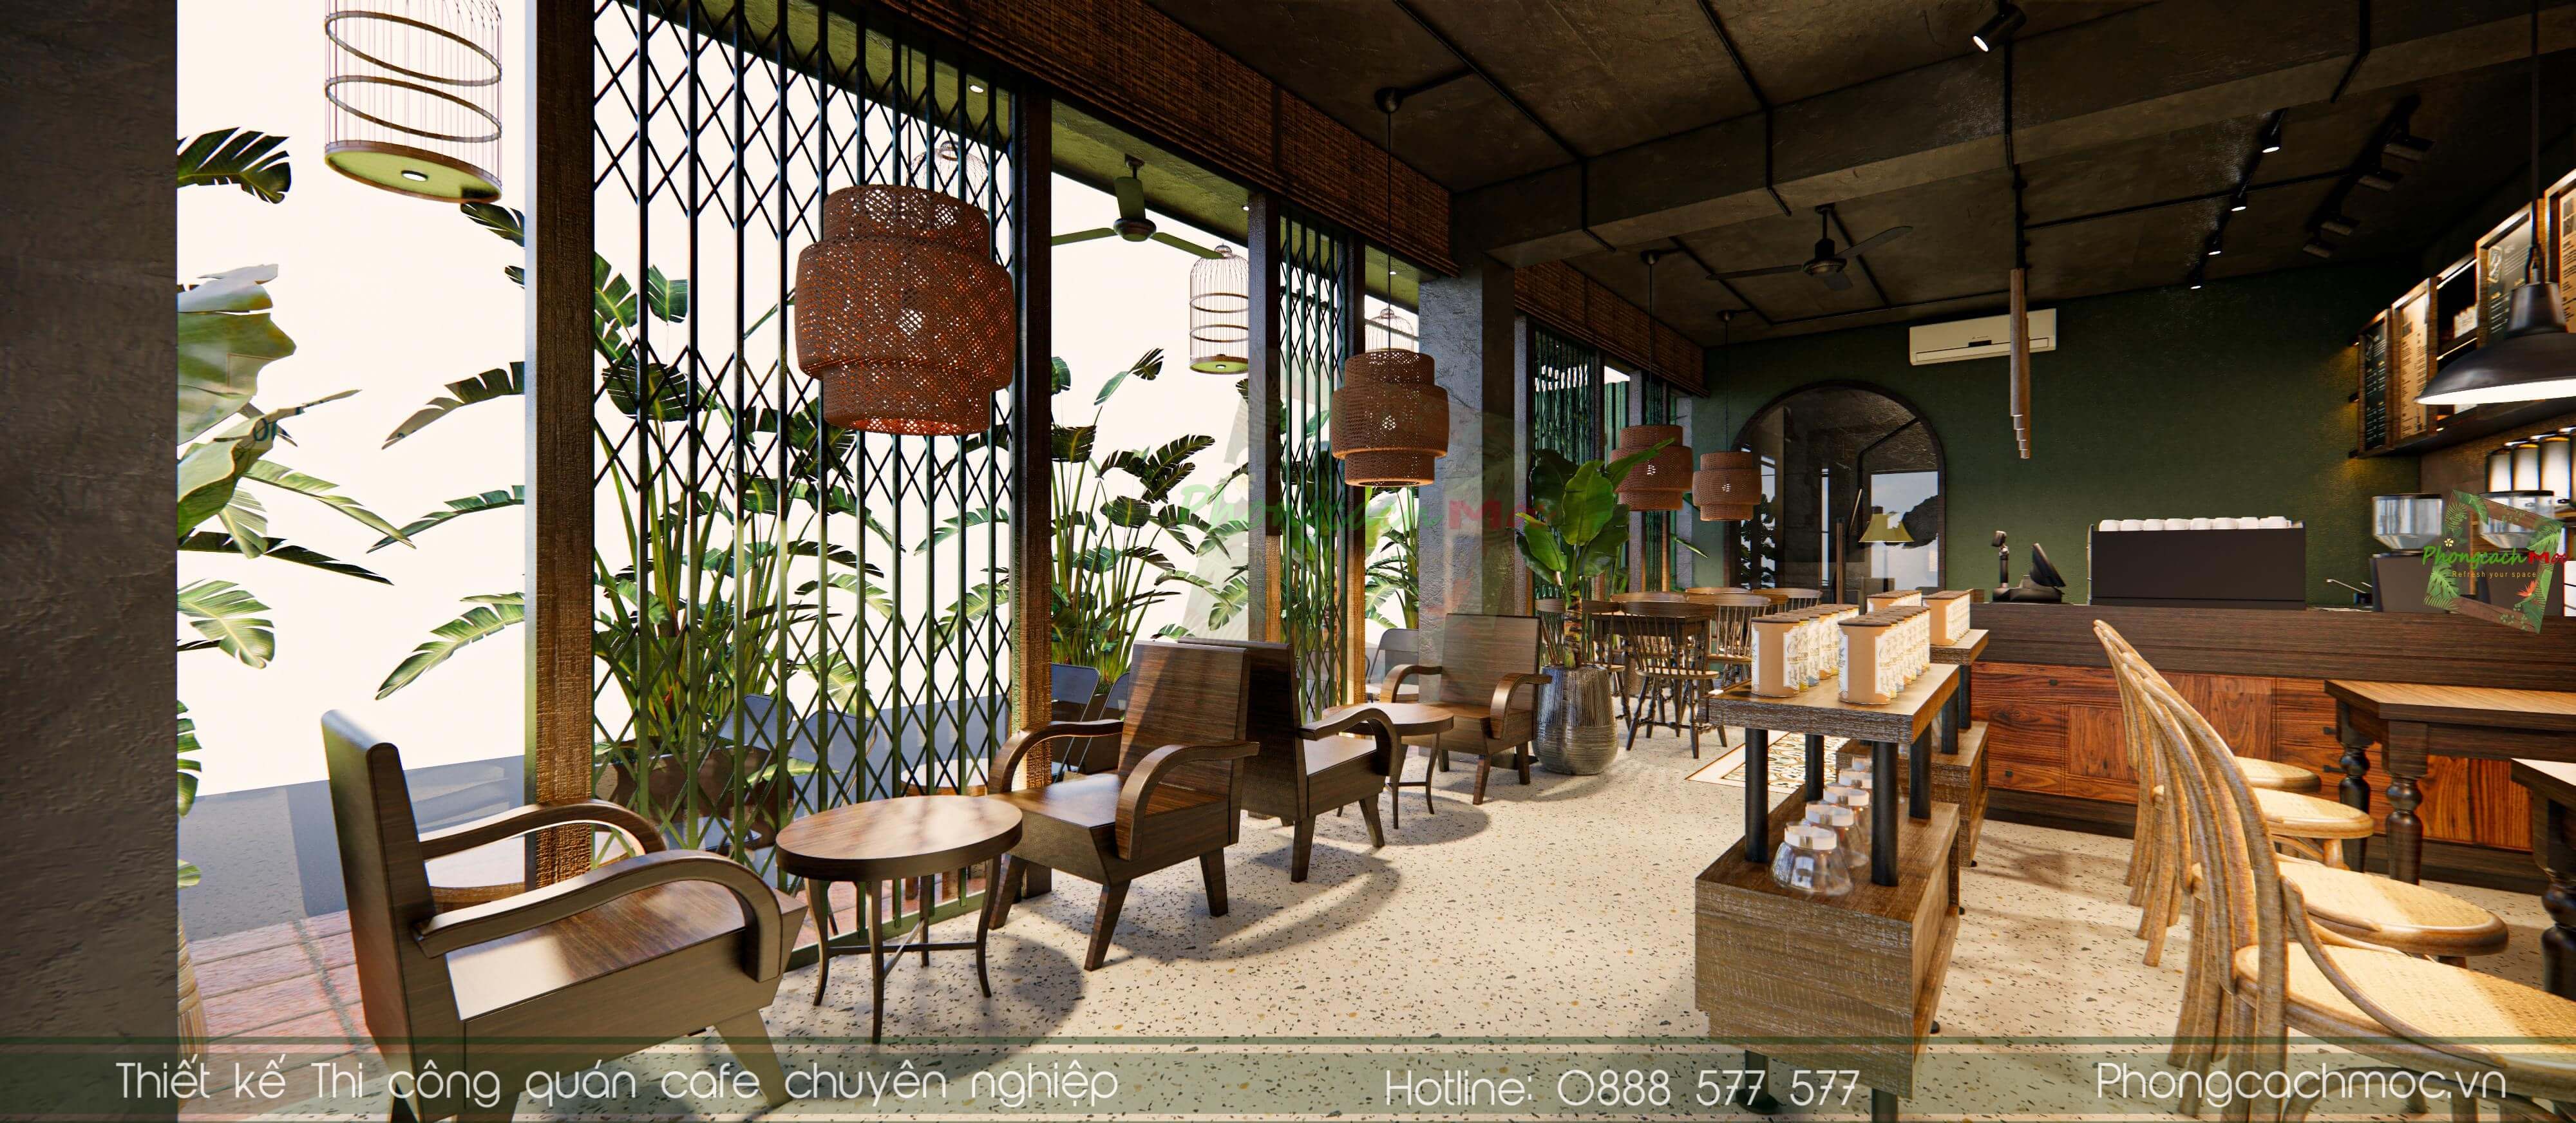 Bashin Coffee Bình Dương - mẫu thiết kế quán cafe indochine 300m2